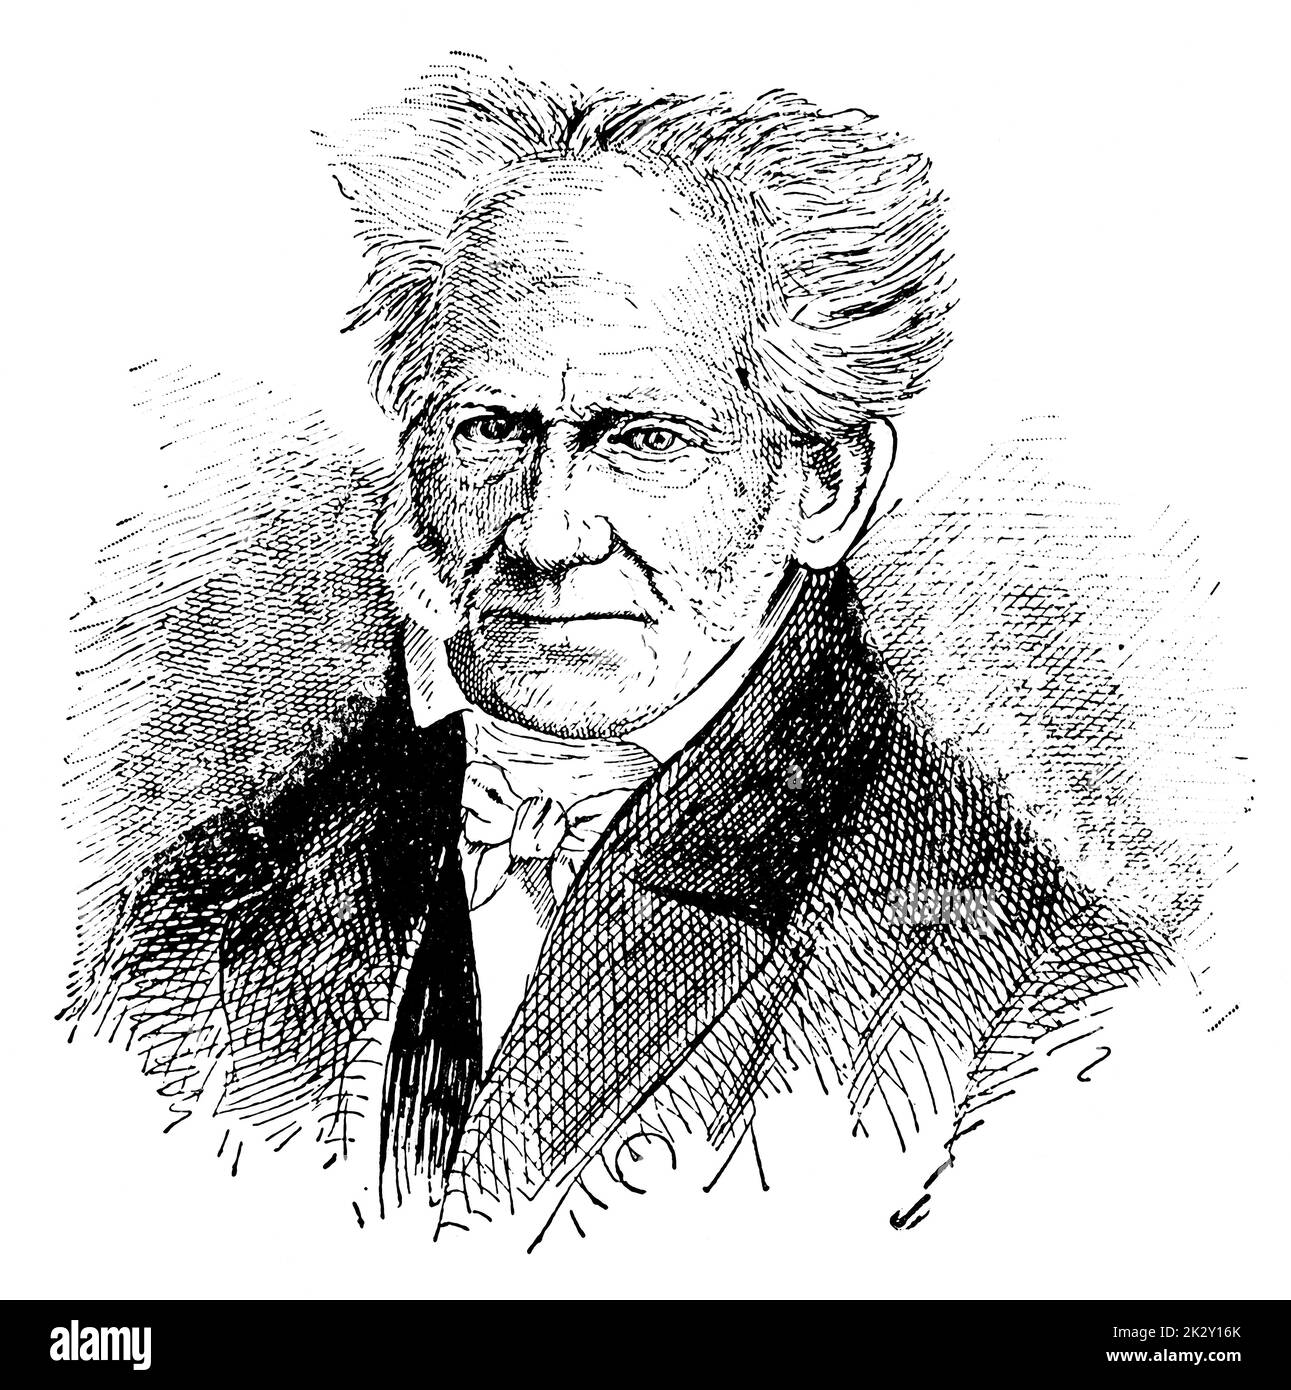 Porträt von Arthur Schopenhauer - ein deutscher Philosoph. Illustration des 19. Jahrhunderts. Deutschland. Weißer Hintergrund. Stockfoto